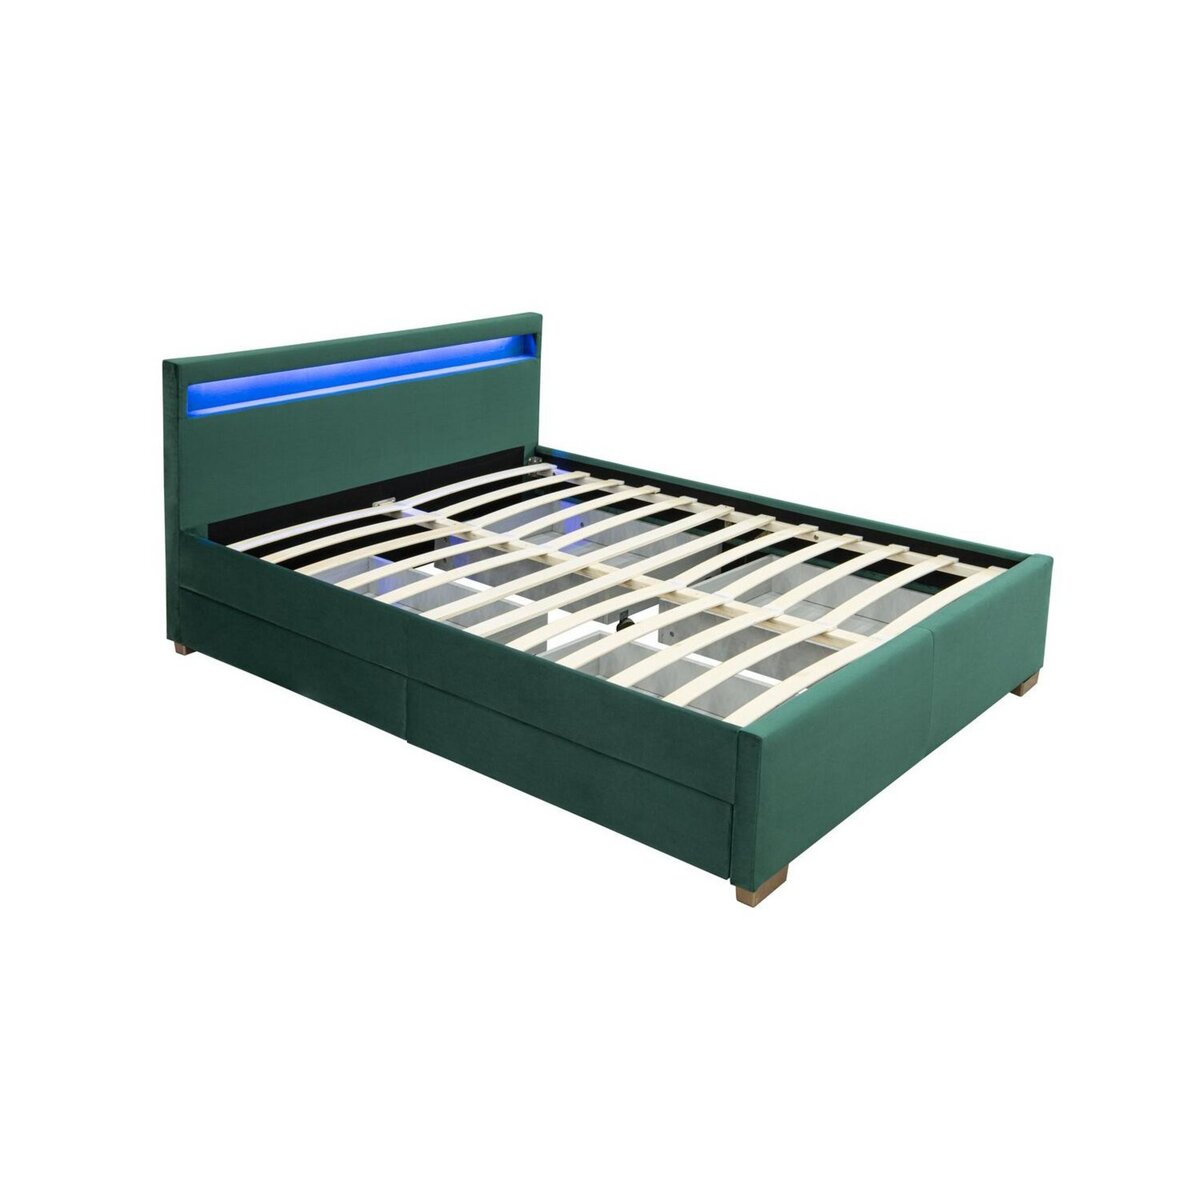 CONCEPT USINE Structure de lit en velours vert avec rangements et LED intégrées 160x200 cm ENFIELD